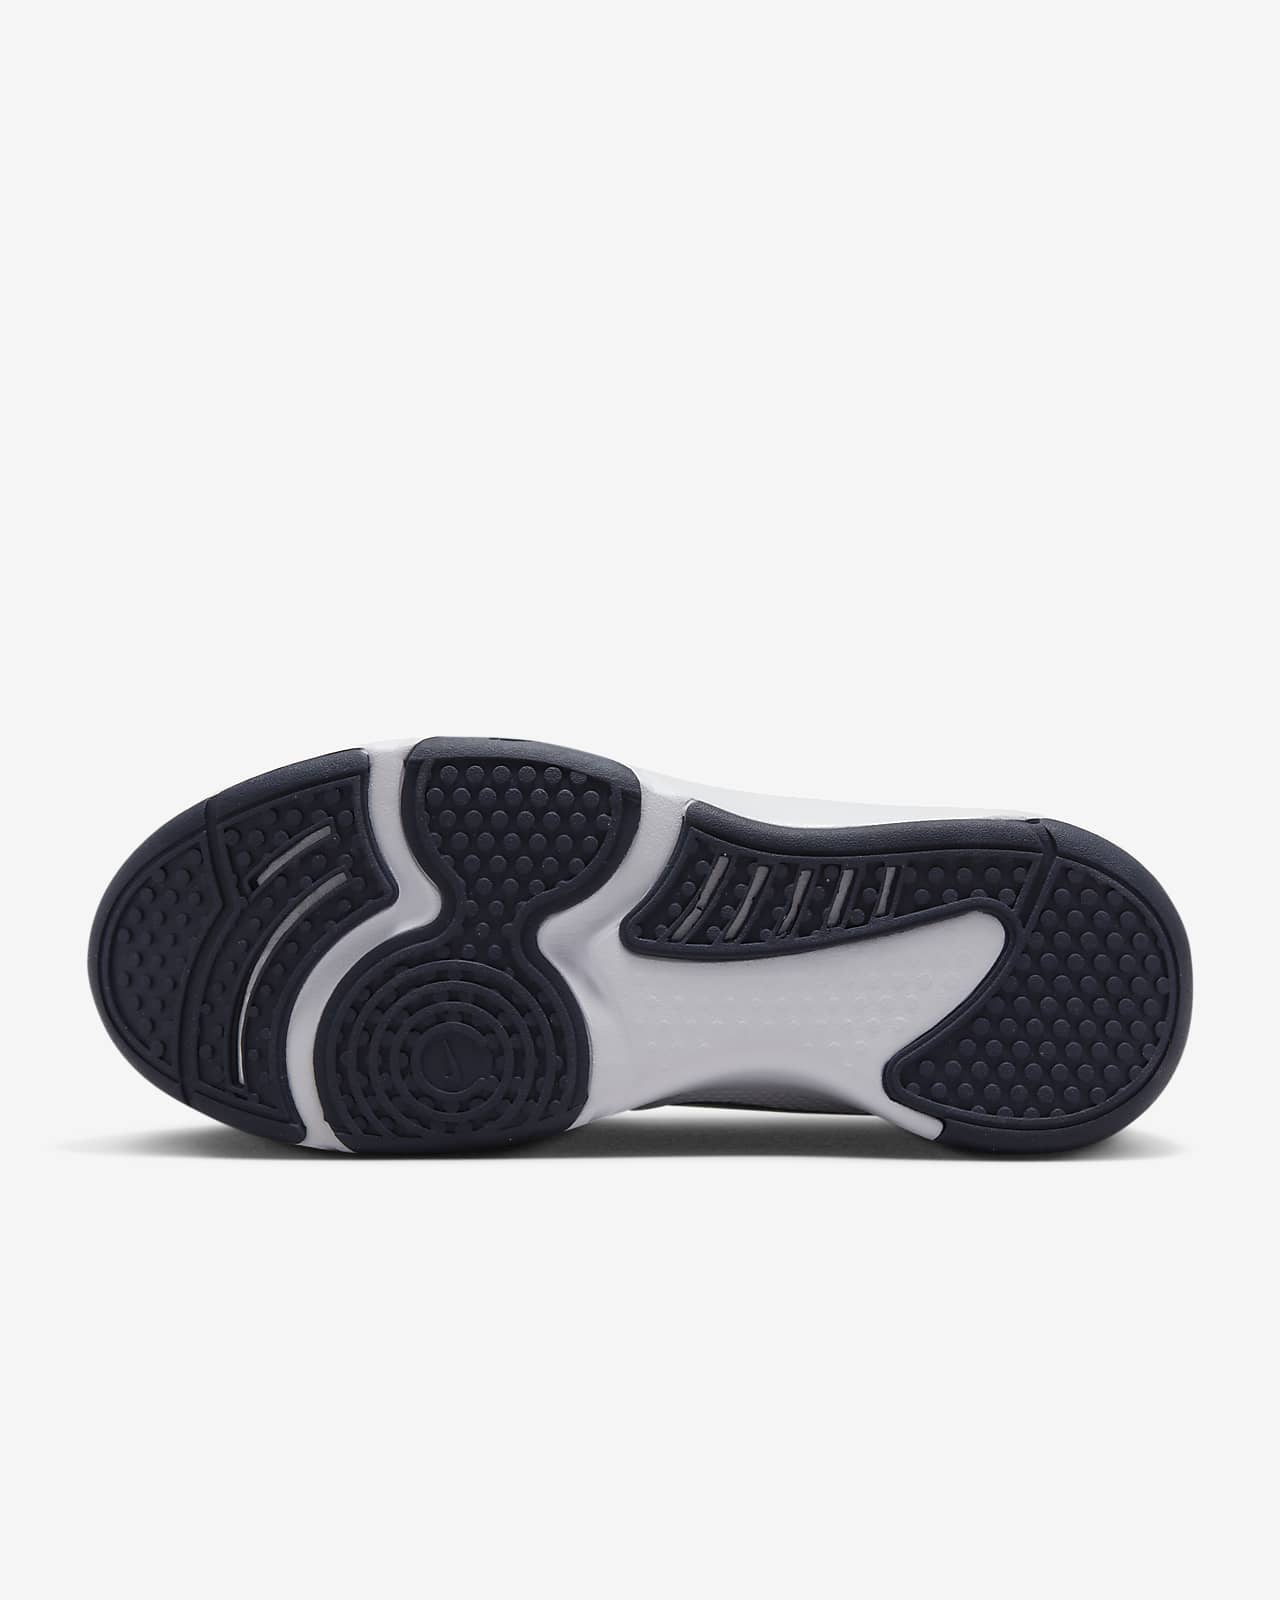 Black white Men sneaker nike air jordan 1 shoes at Rs 530/pair in Zira |  ID: 23940885191